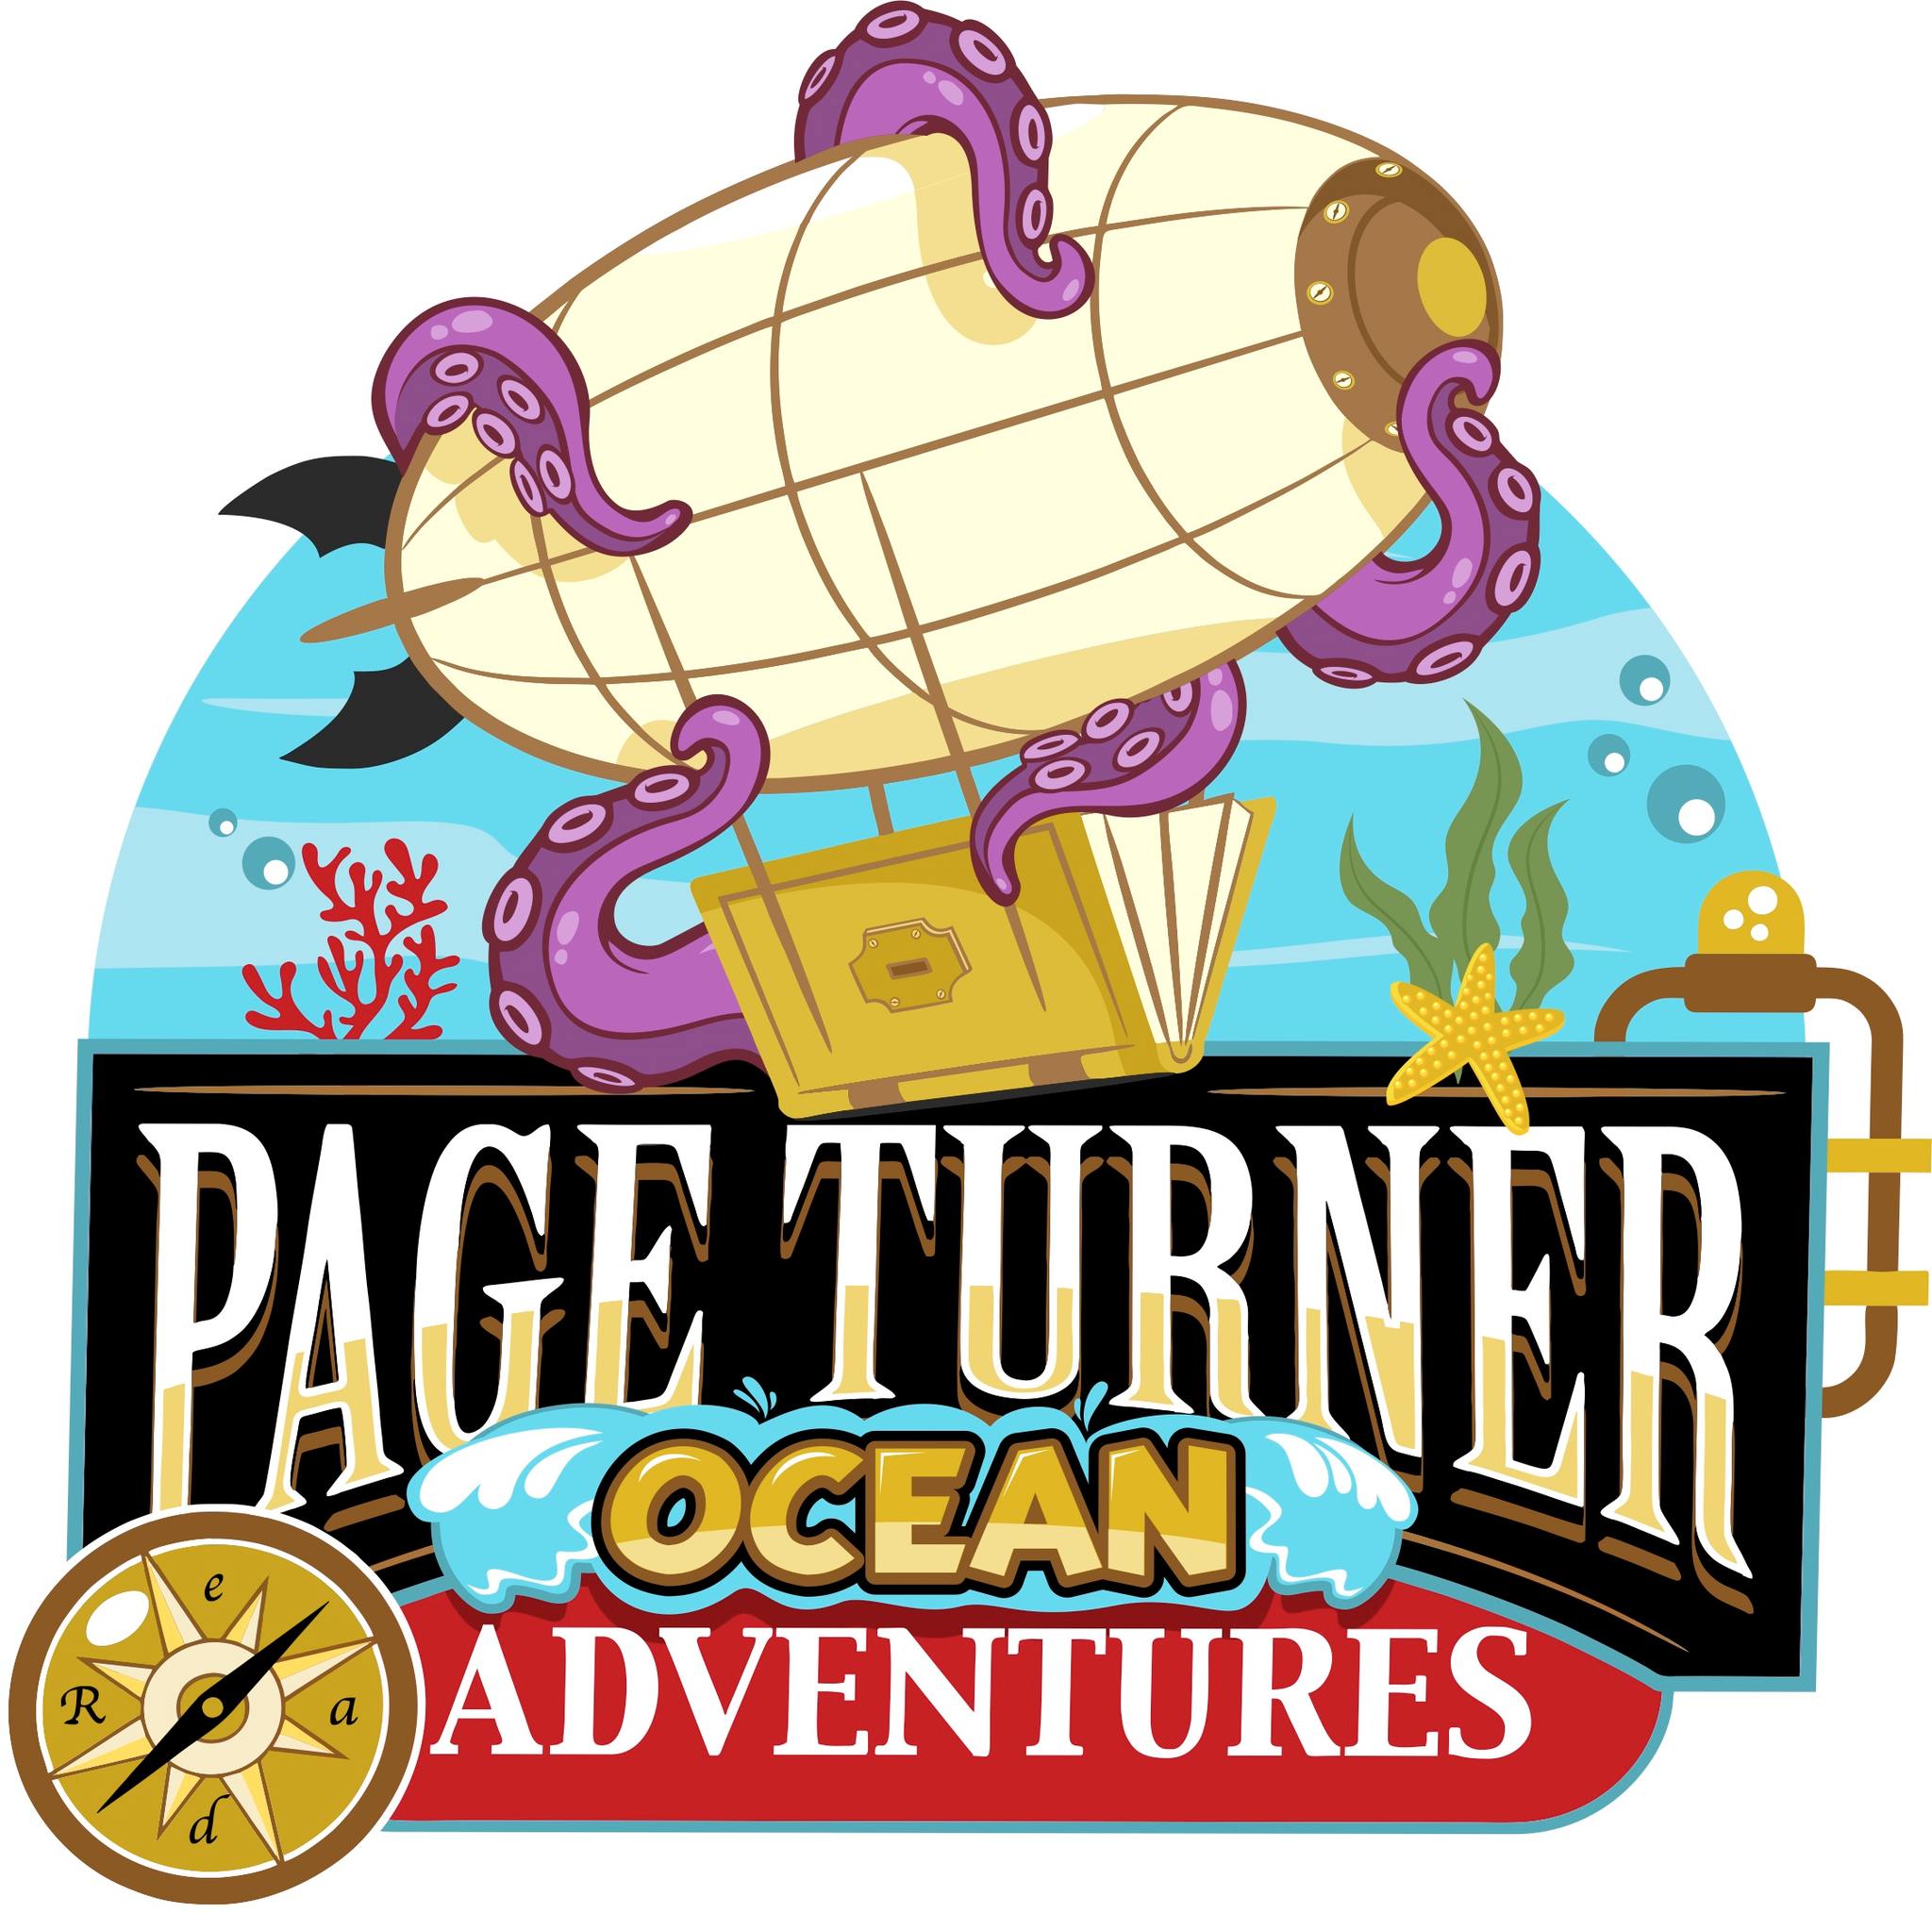 Page turner ocean adventures